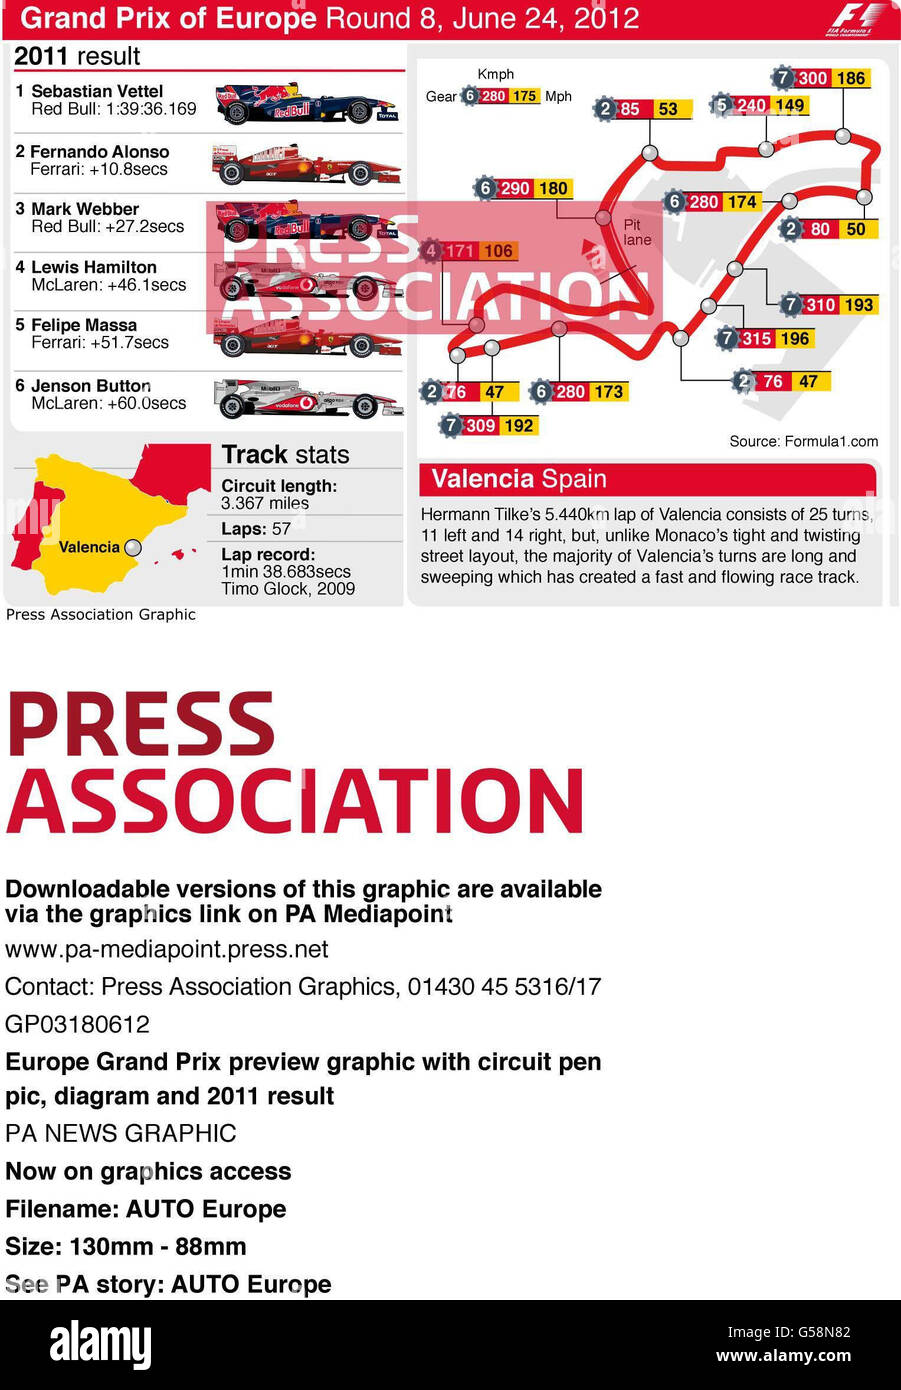 Aperçu du Grand Prix d'Europe avec circuit PEN-pic, schéma et résultat 2011 Banque D'Images